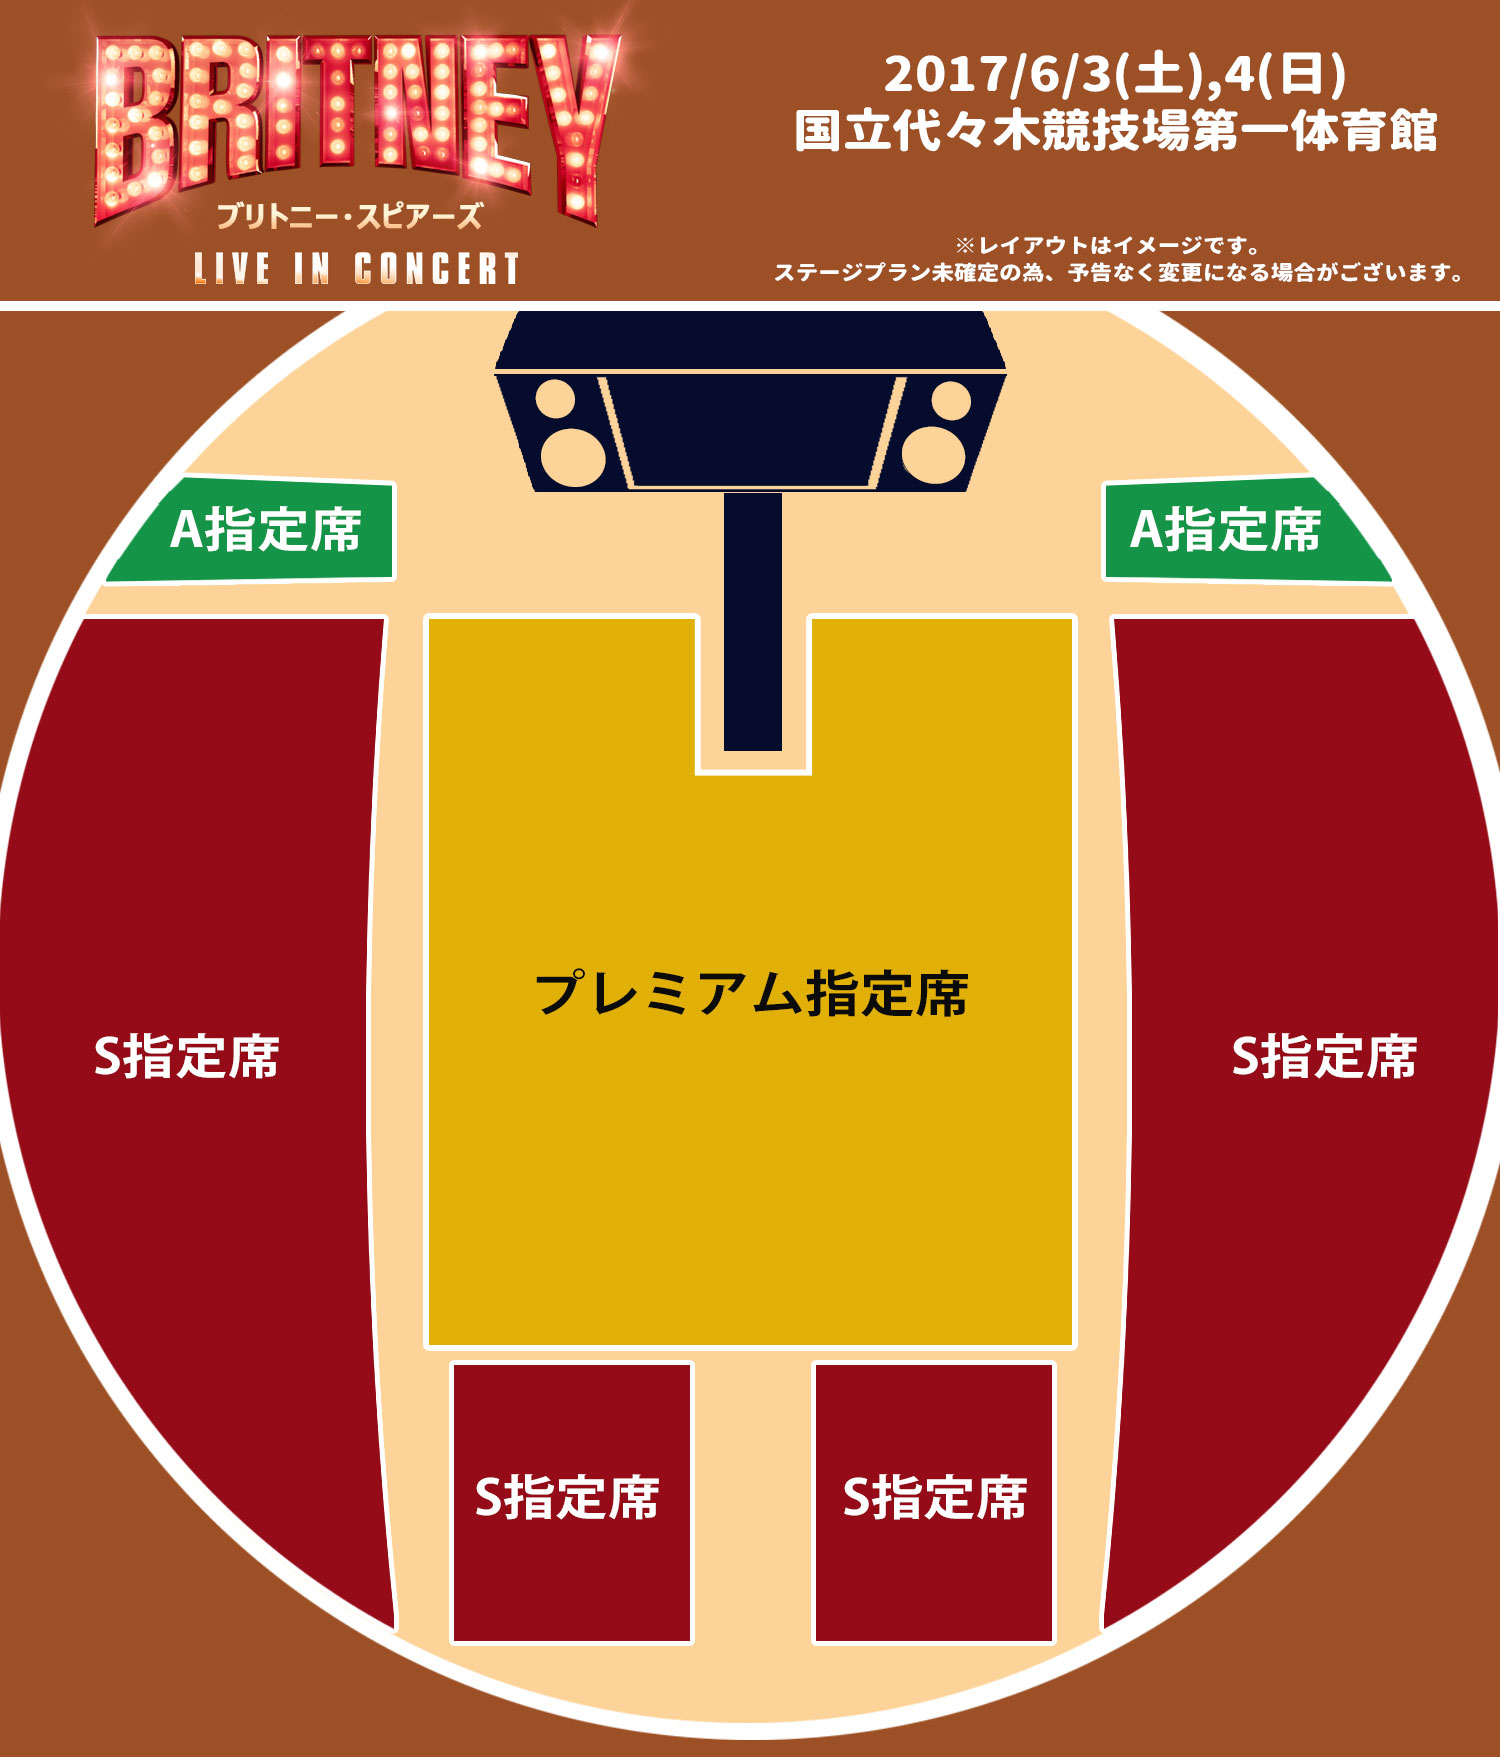 Resultado de imagem para britney concert tokyo map